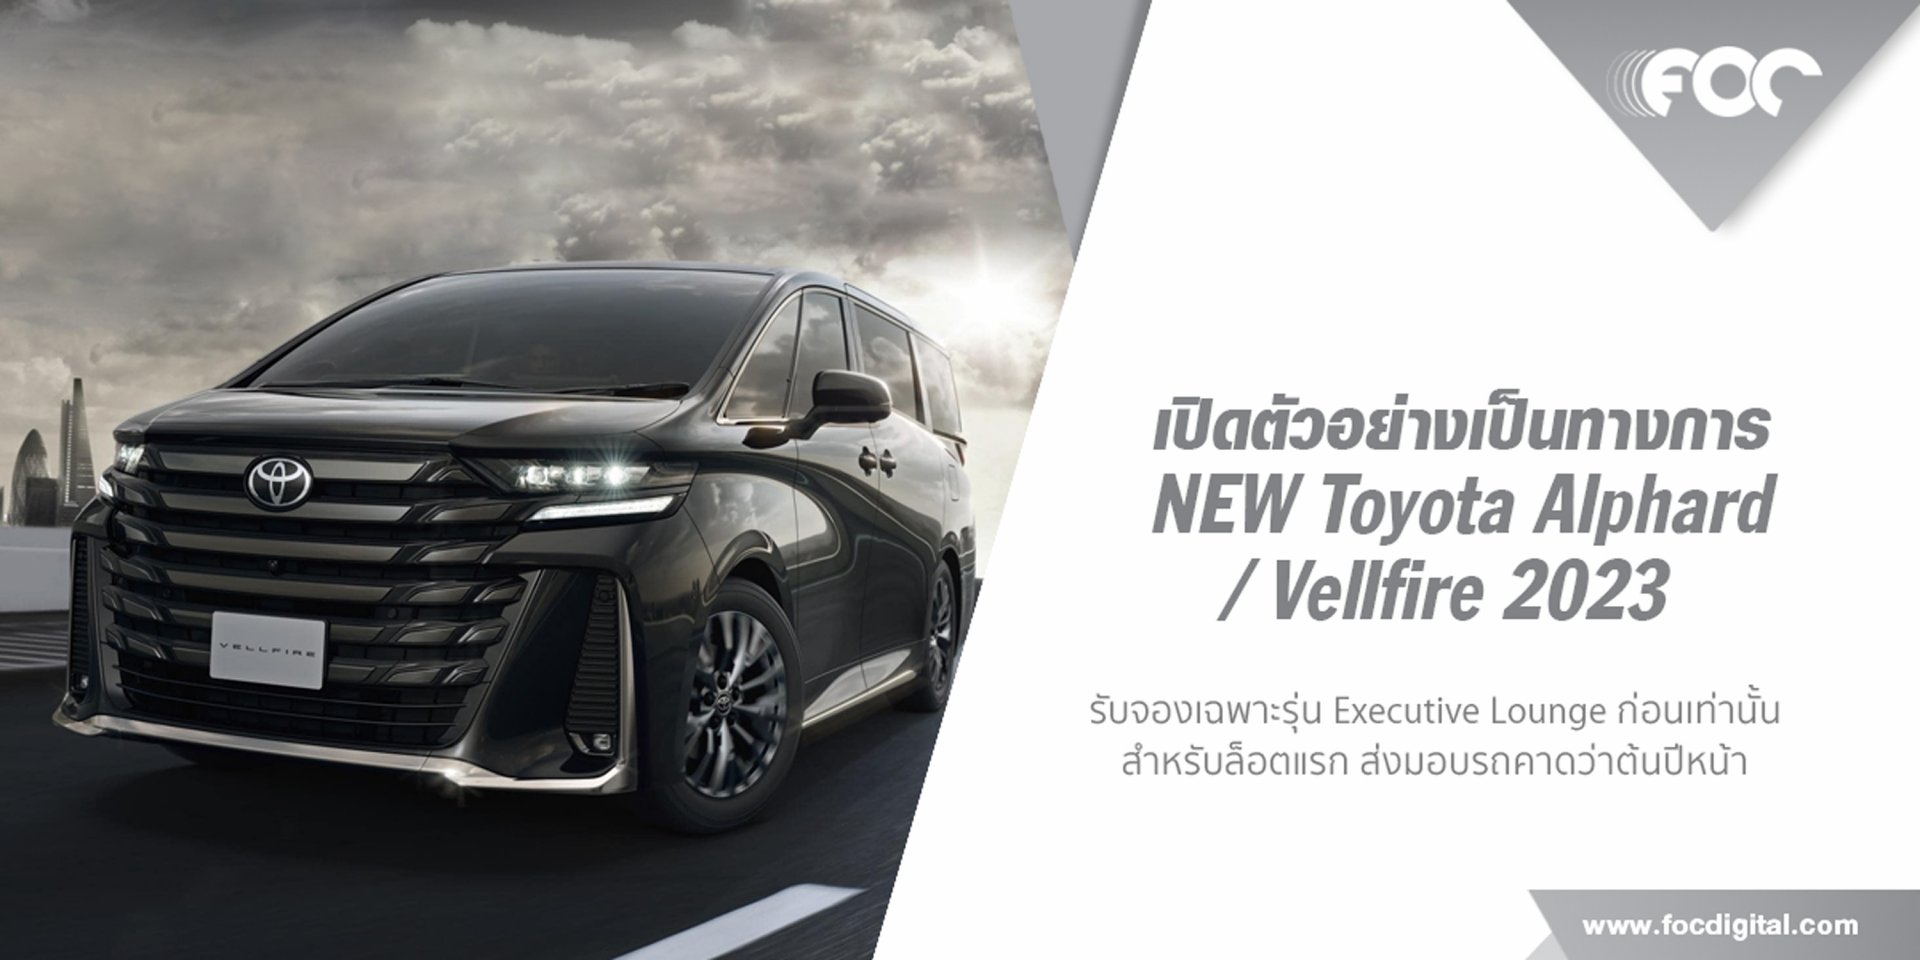 เปิดตัวอย่างเป็นทางการ New Toyota Alphard/Vellfire 2023